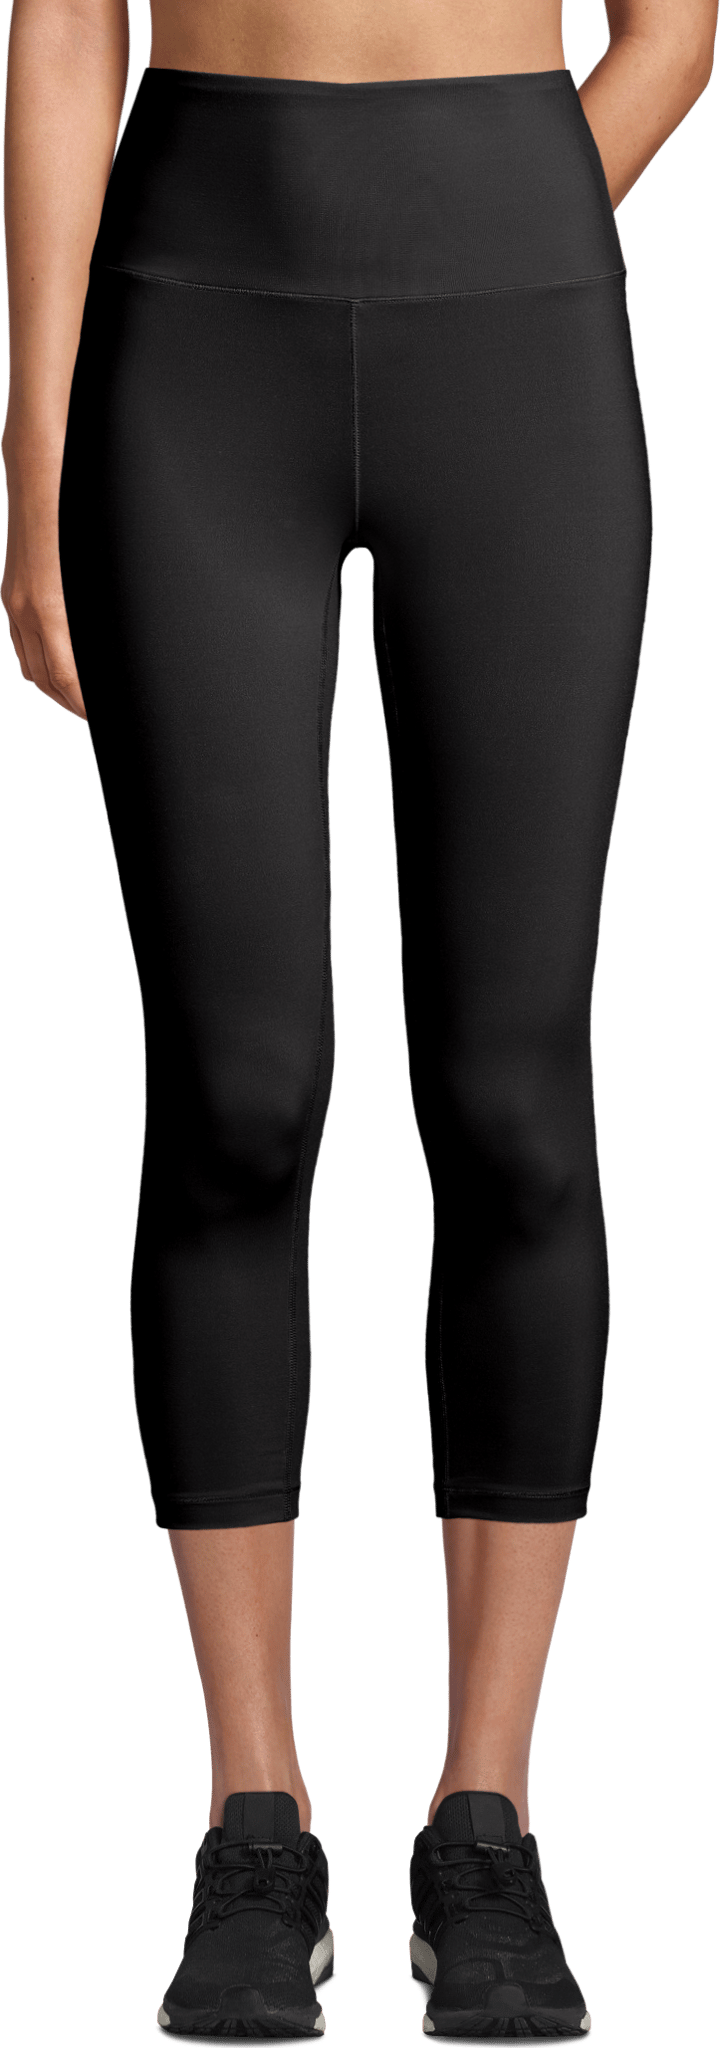 Casall Women's Ultra High Waist Cropped Tights Black Casall